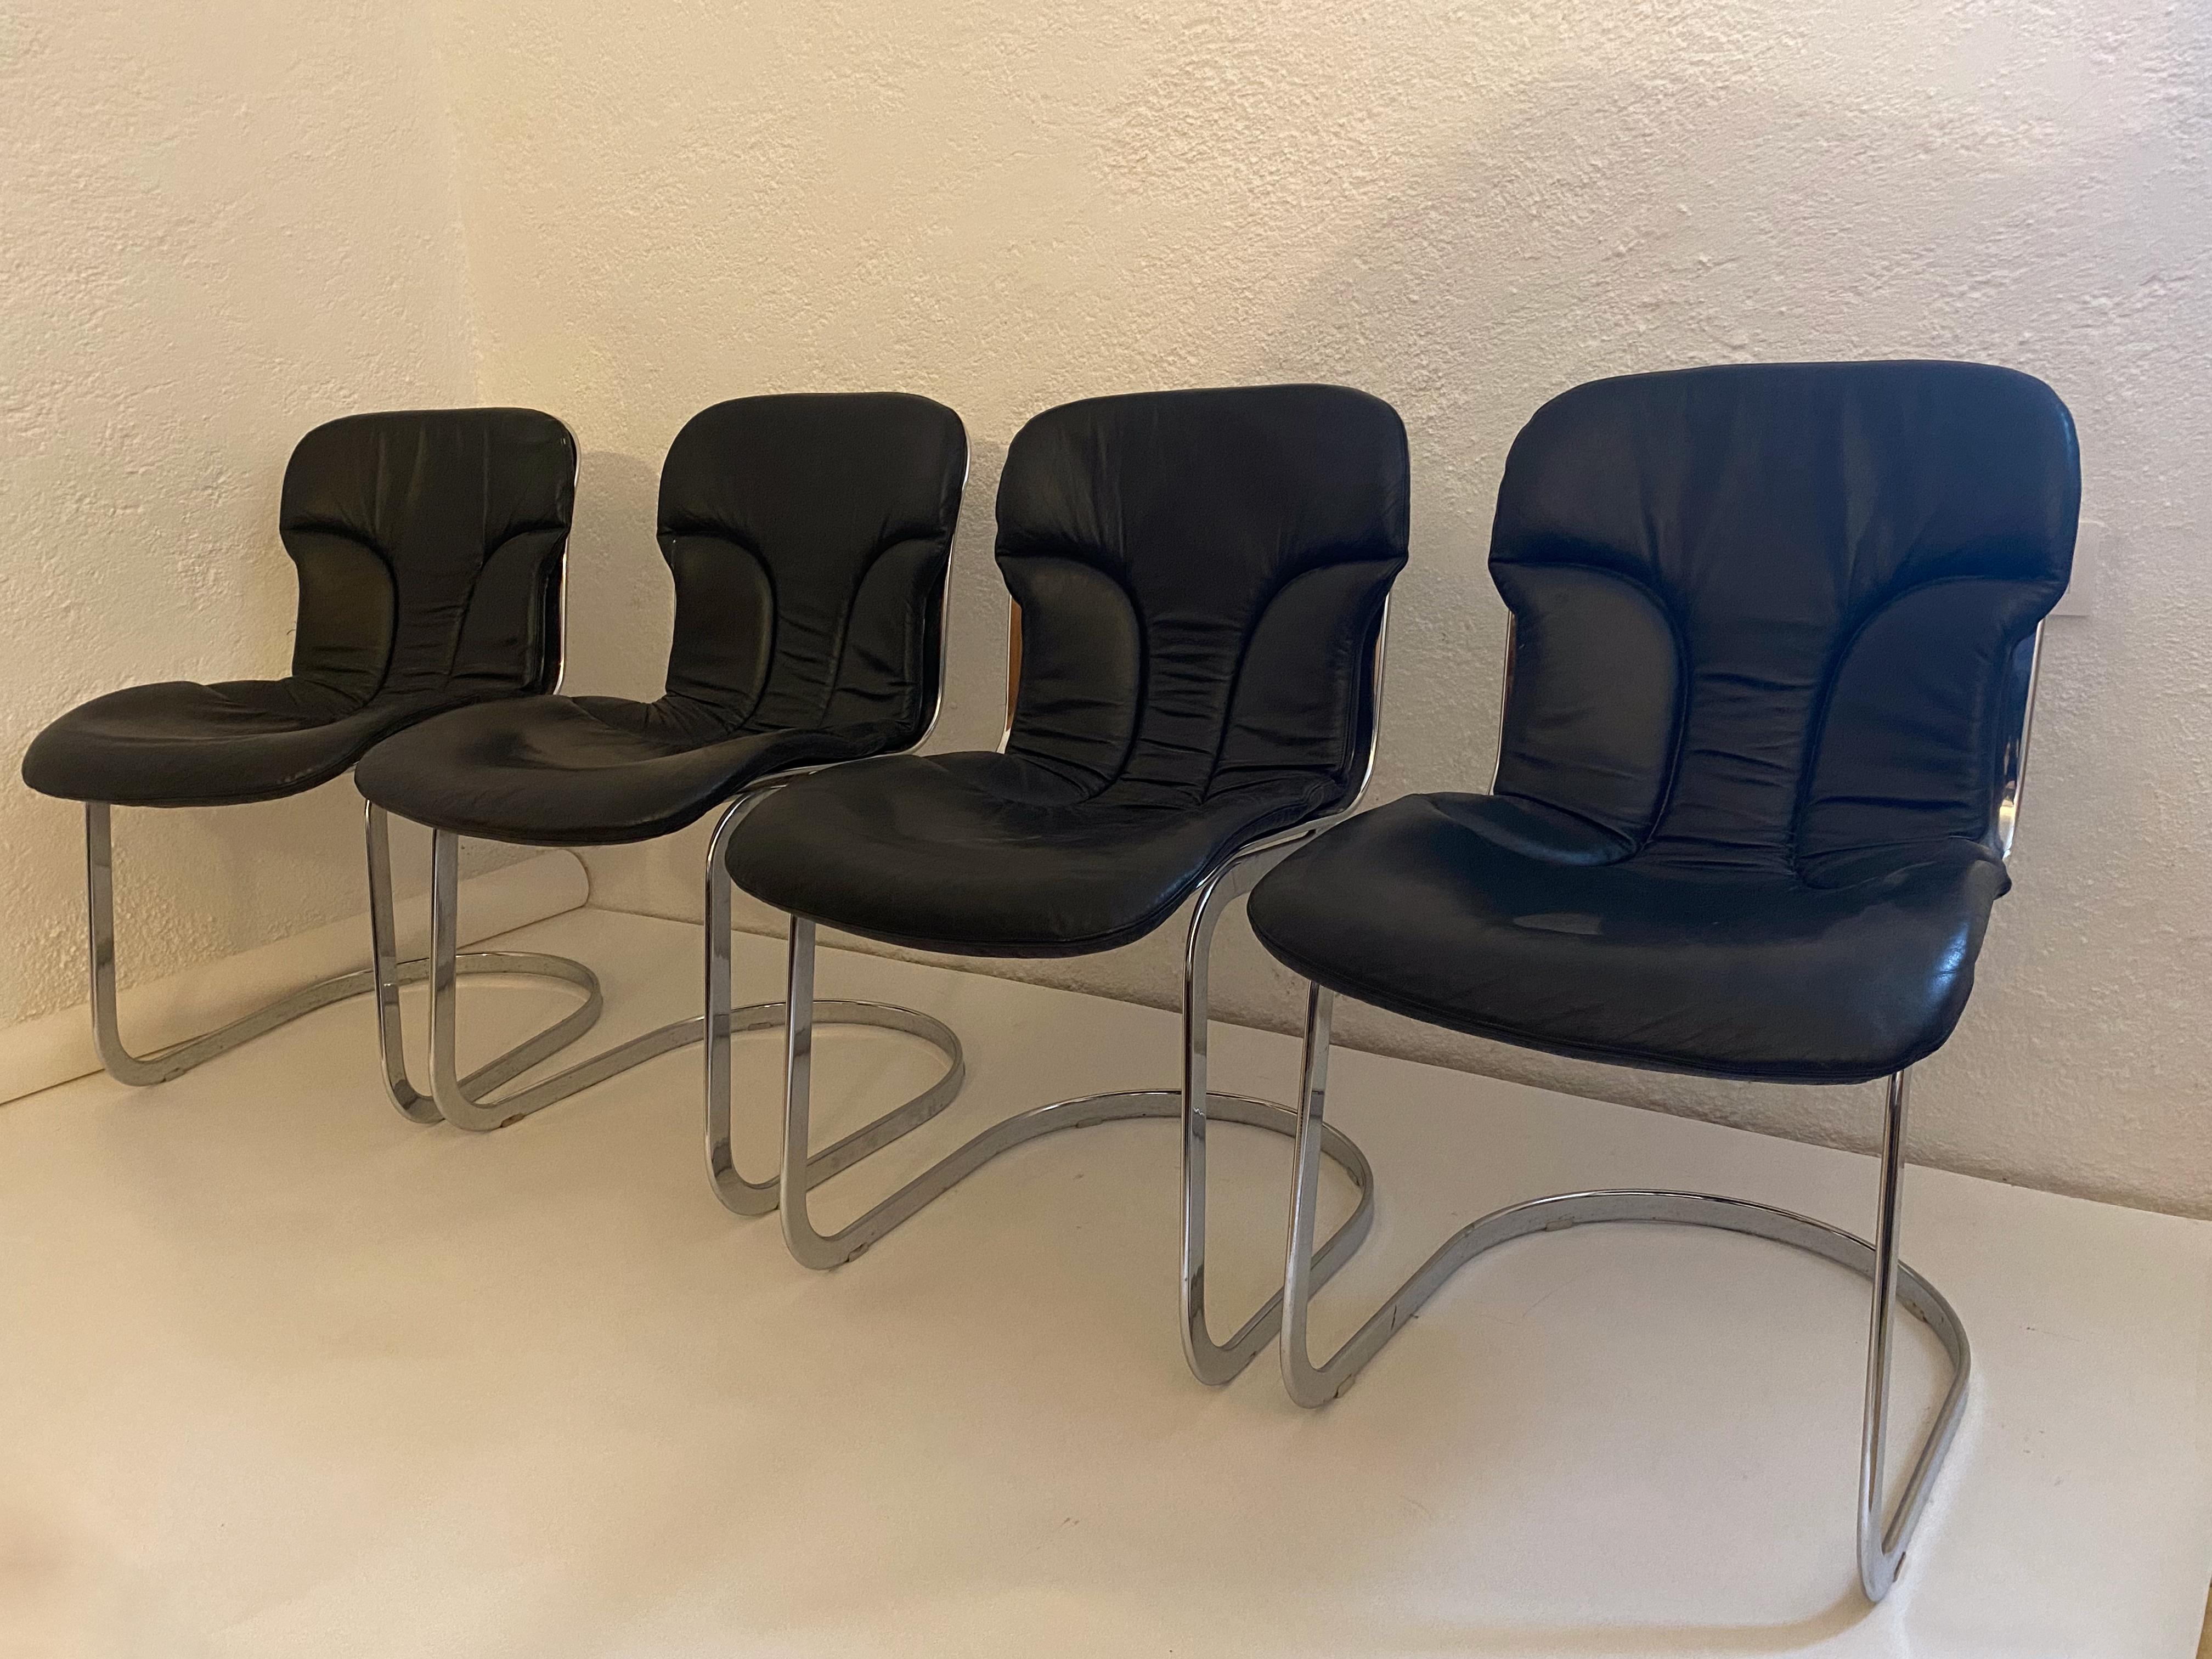 Für Ihre Betrachtung eine Reihe von 4 Stühlen von Willy Rizzo entworfen und produziert von Cidue. 

Original-Leder. Keine Reparaturen oder Schäden an der Struktur.

Hergestellt in Italien.